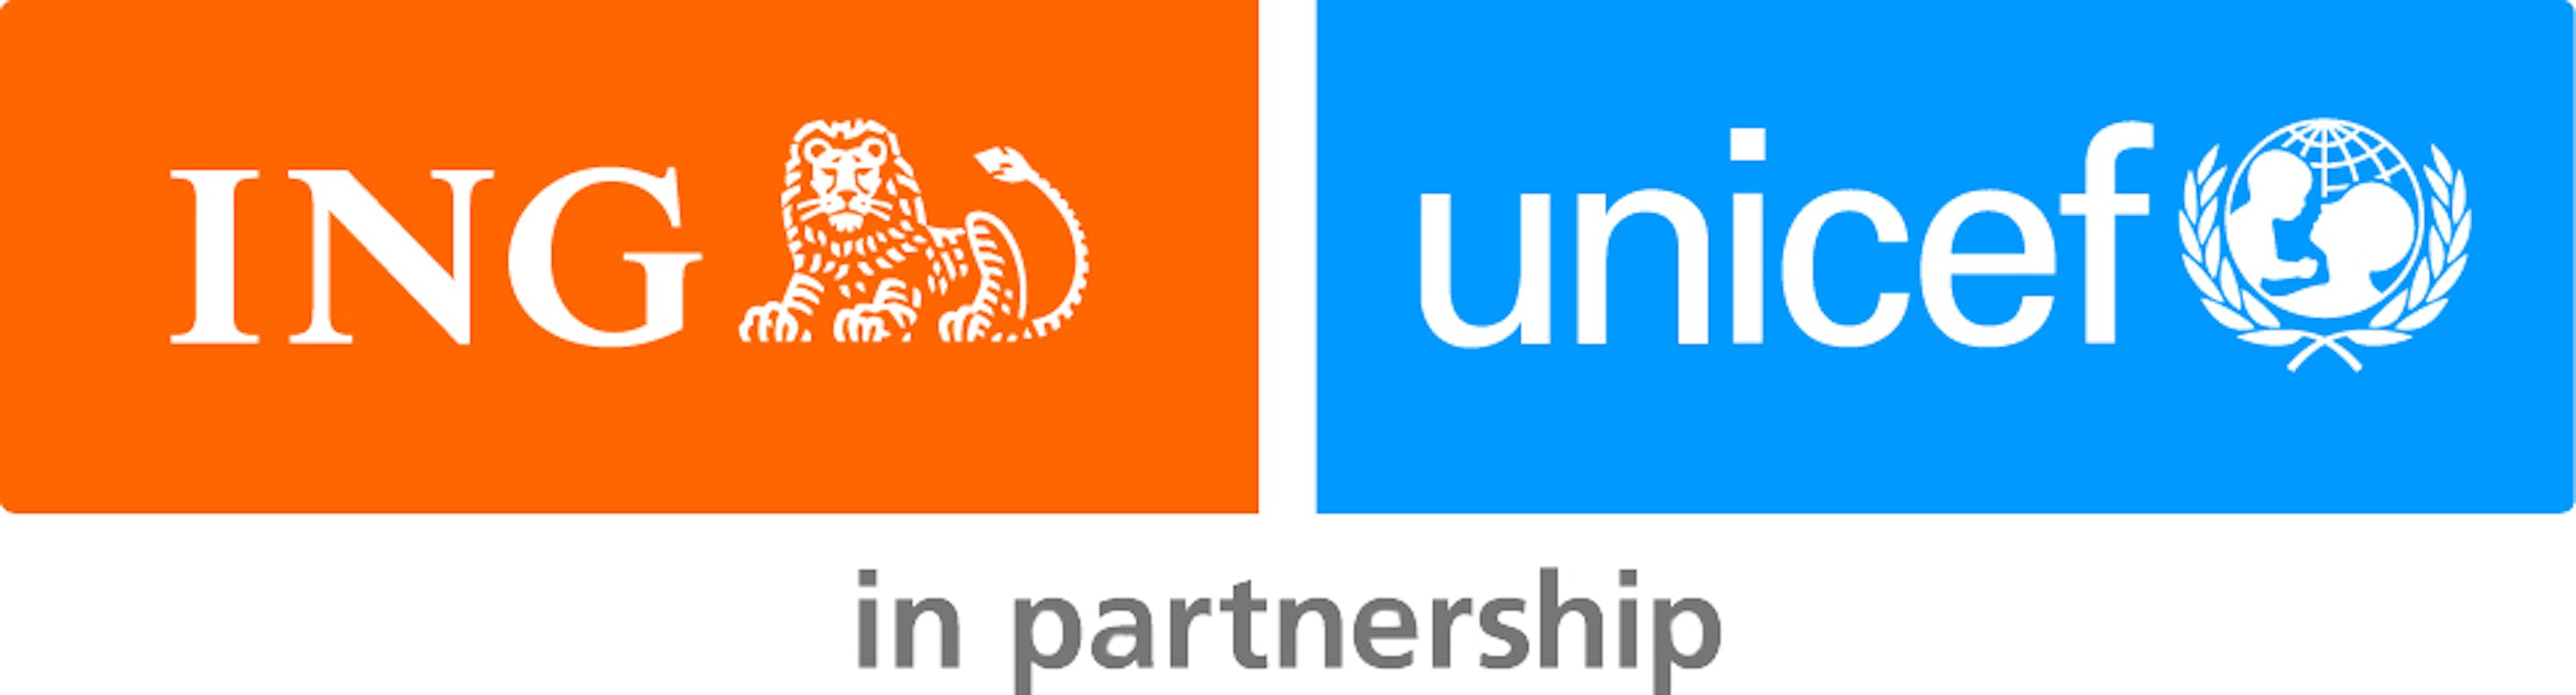 ING-UNICEF-Logo.jpg